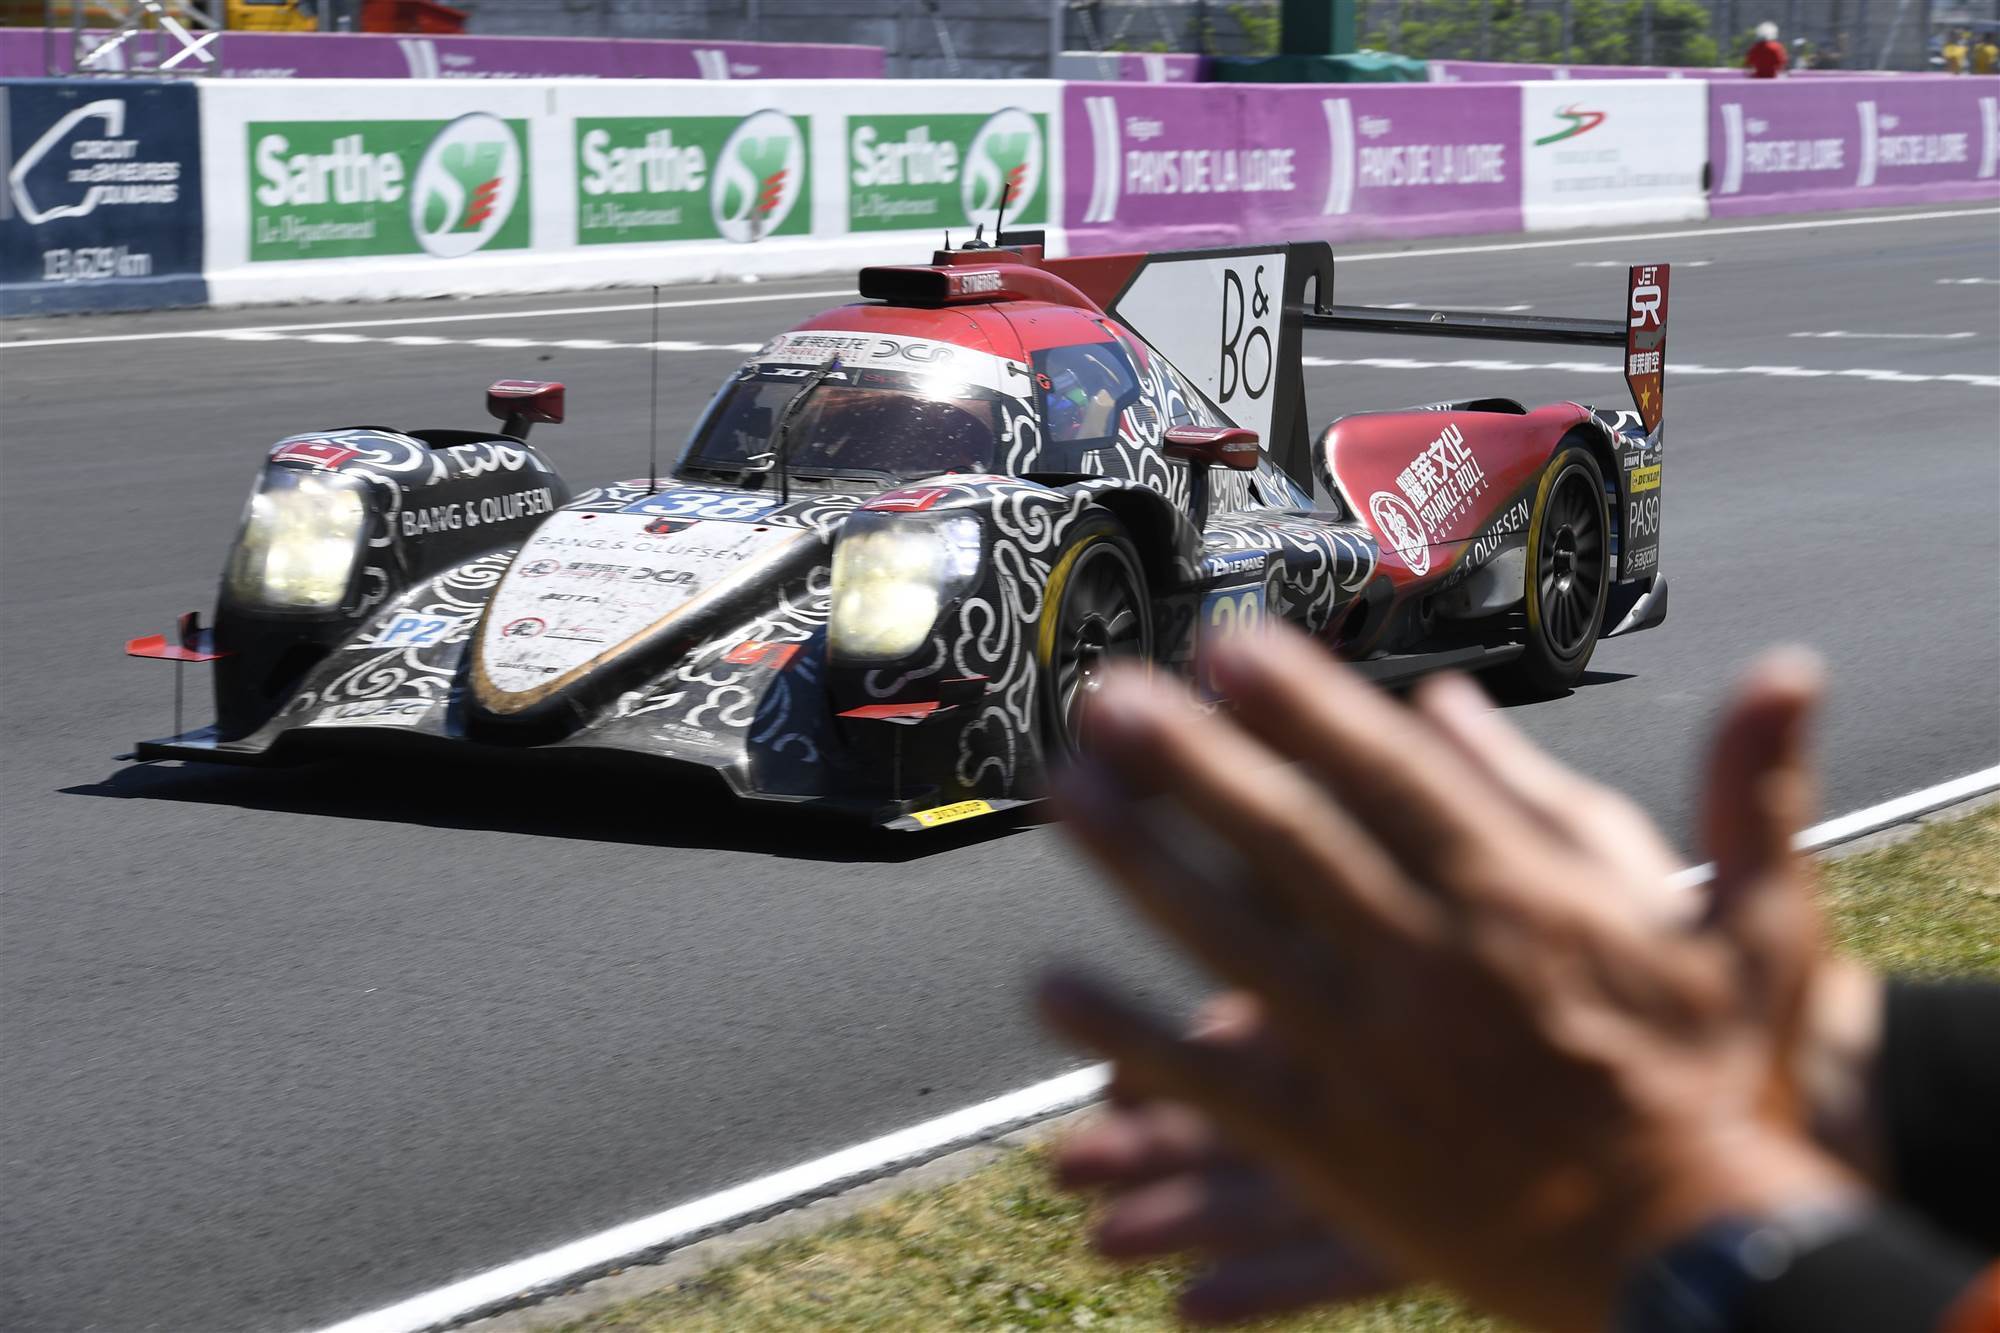 Porsche Wins Le Mans 24 Hour Motorsport Inside Sport